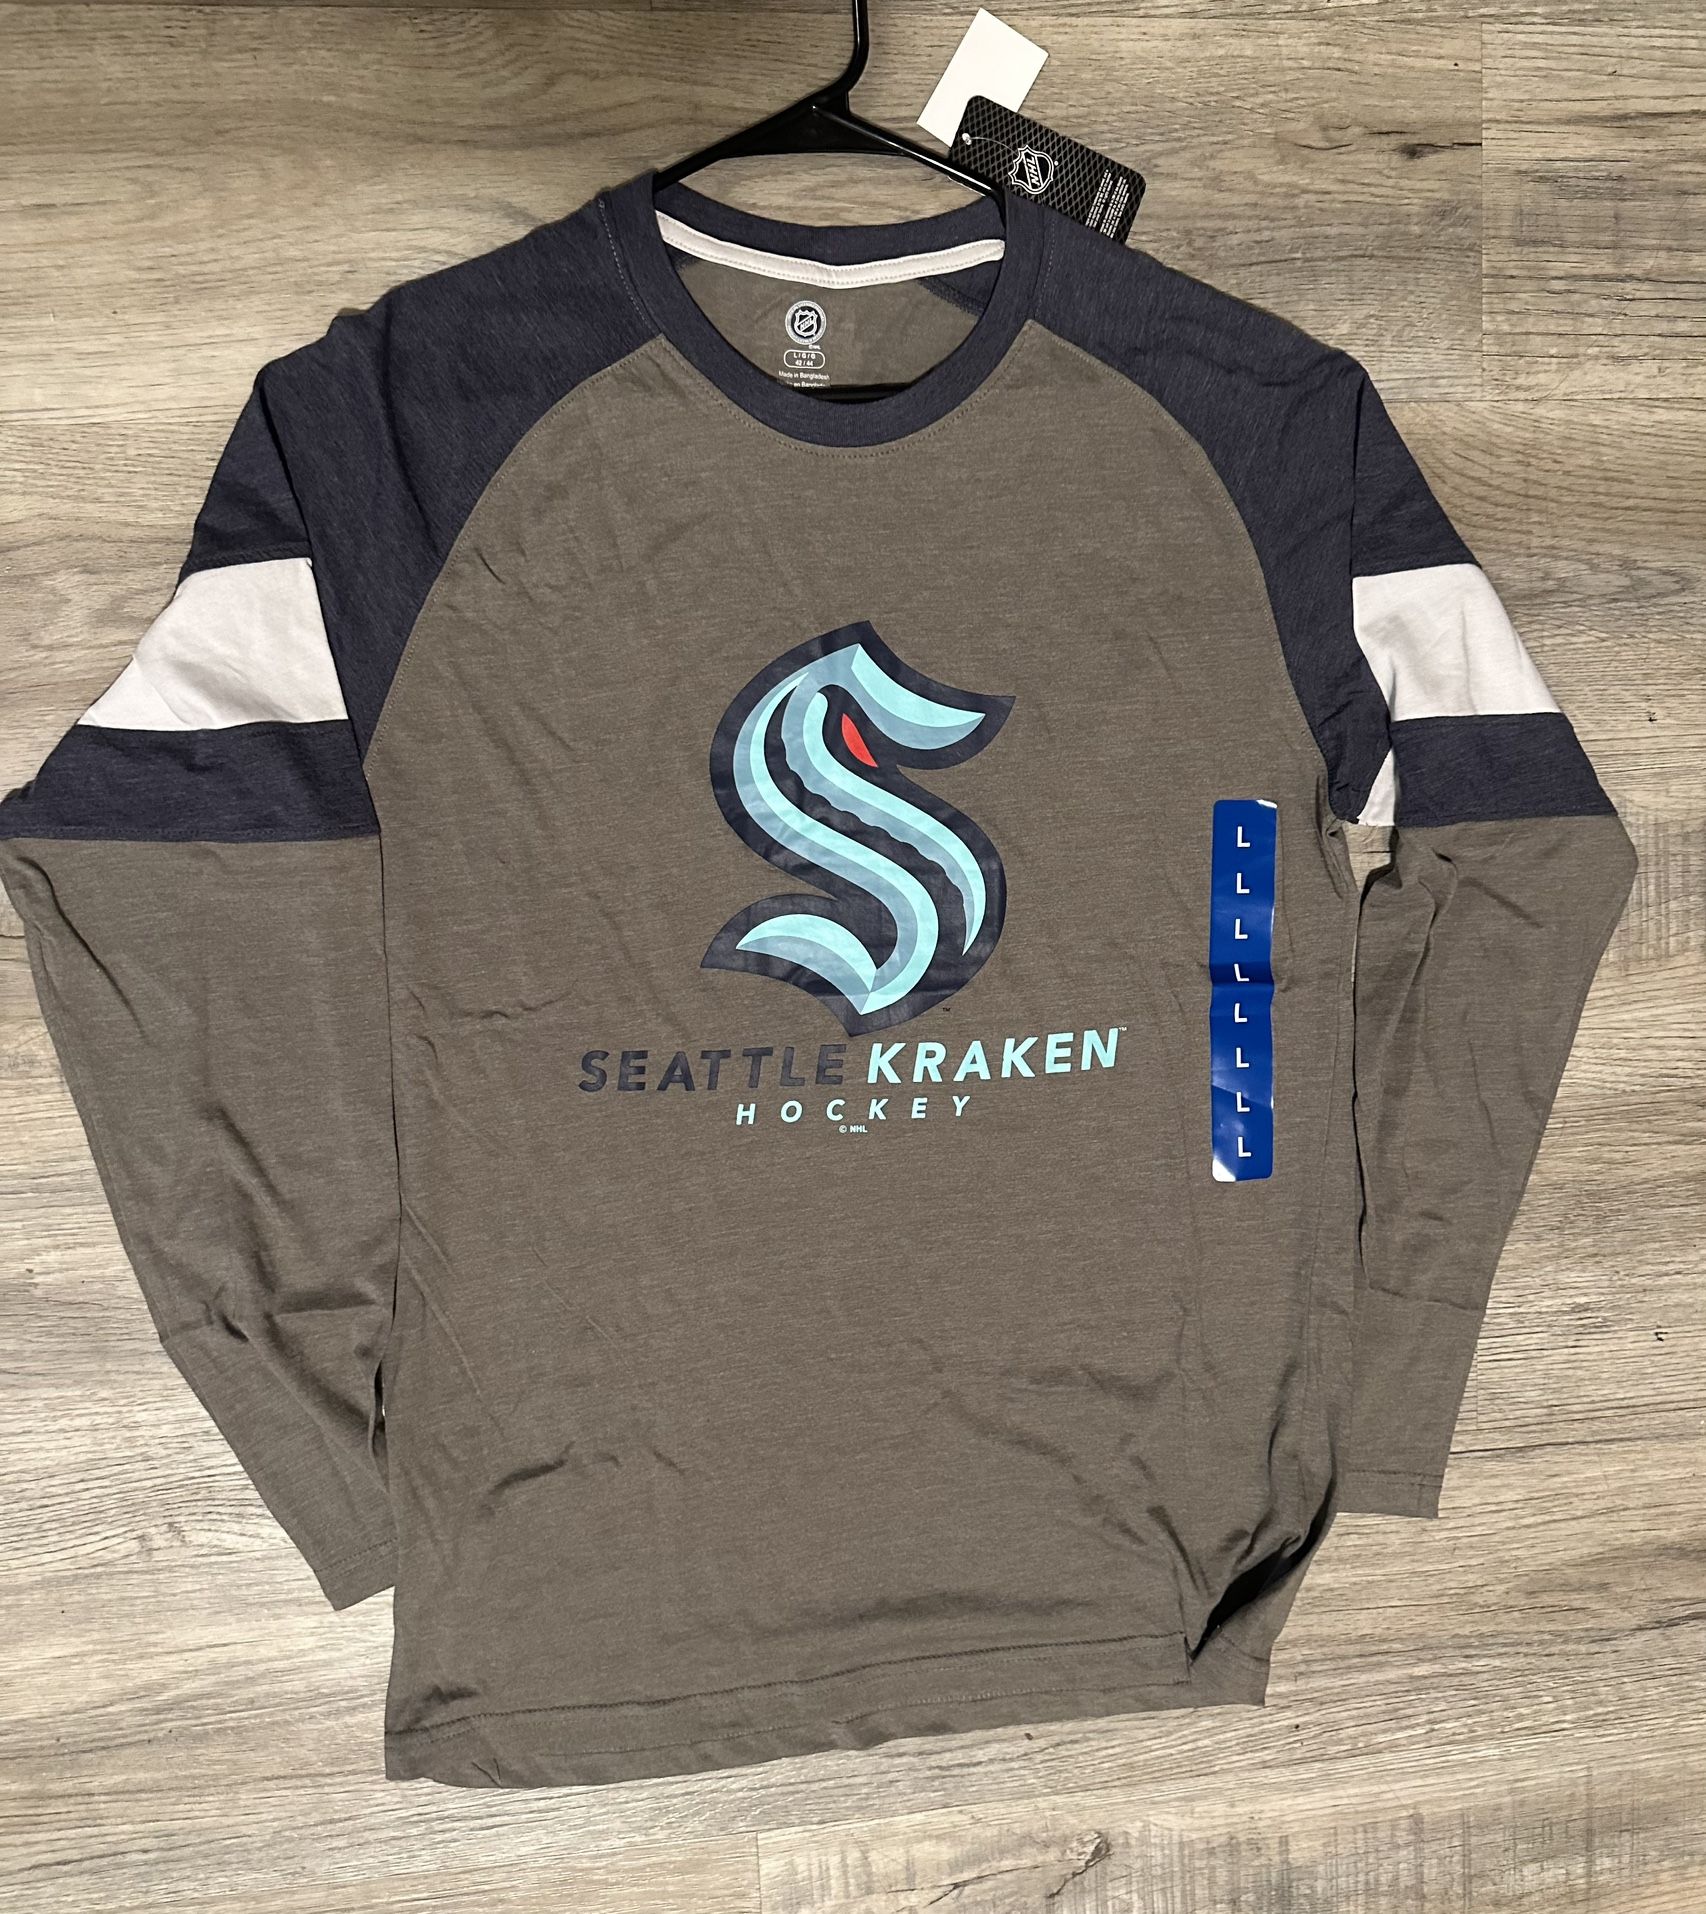 Seattle Kraken Baseball Style T-Shirt (S/M/L/XL)